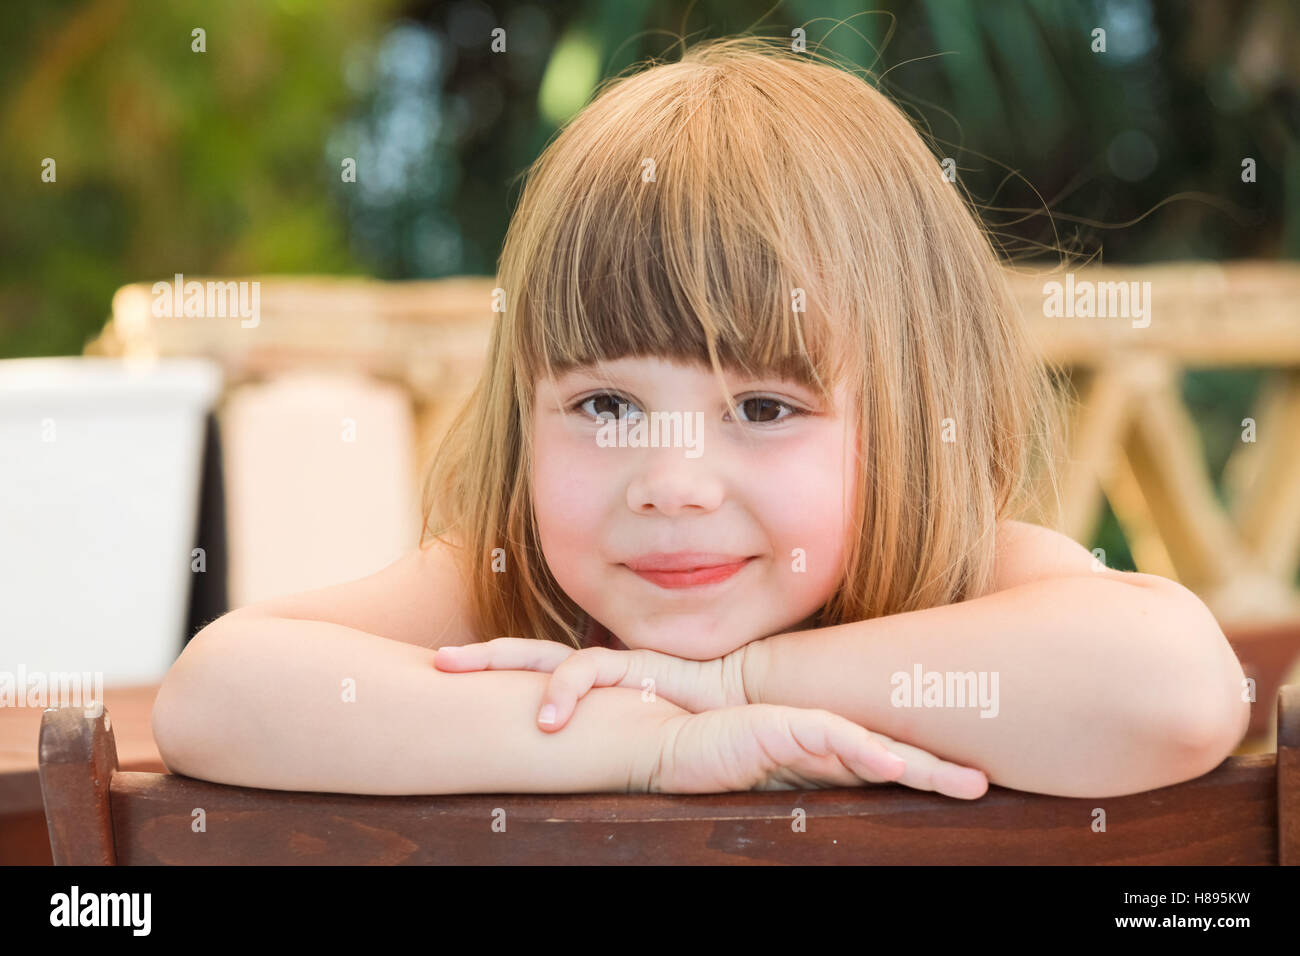 Niedliche Lachen kaukasischen kleines Mädchen, close-up Outdoor-Porträt Stockfoto